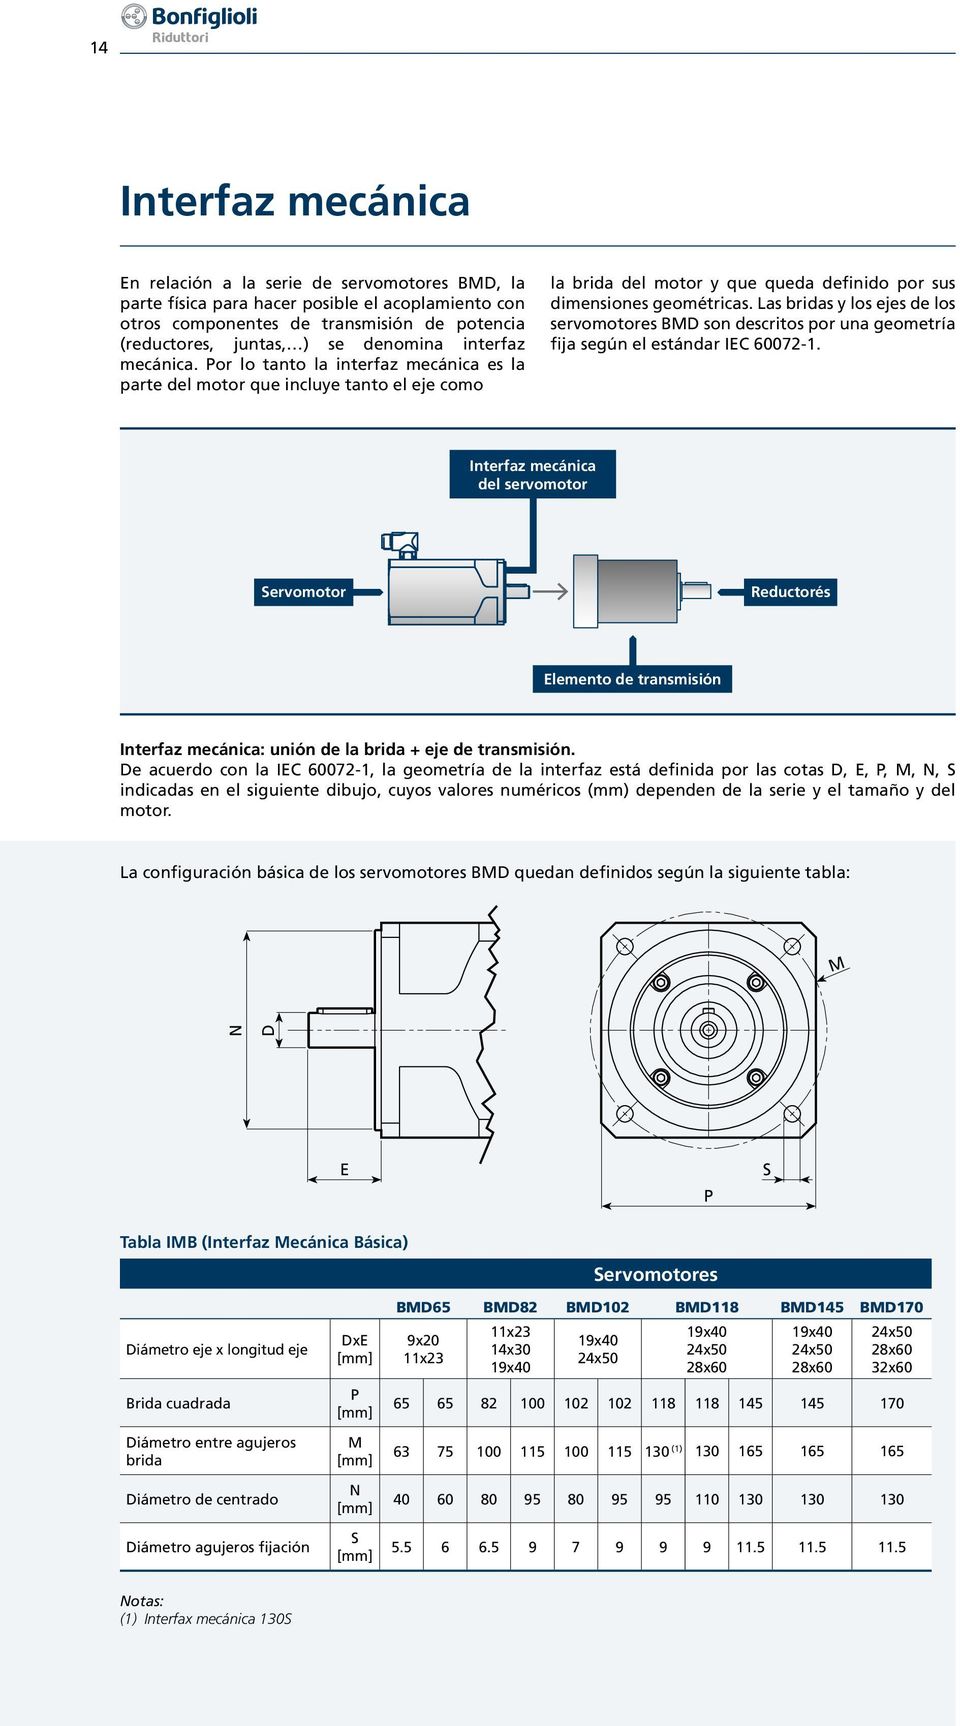 Las bridas y los ejes de los servomotores BMD son descritos por una geometría fija según el estándar IEC 60072-1.